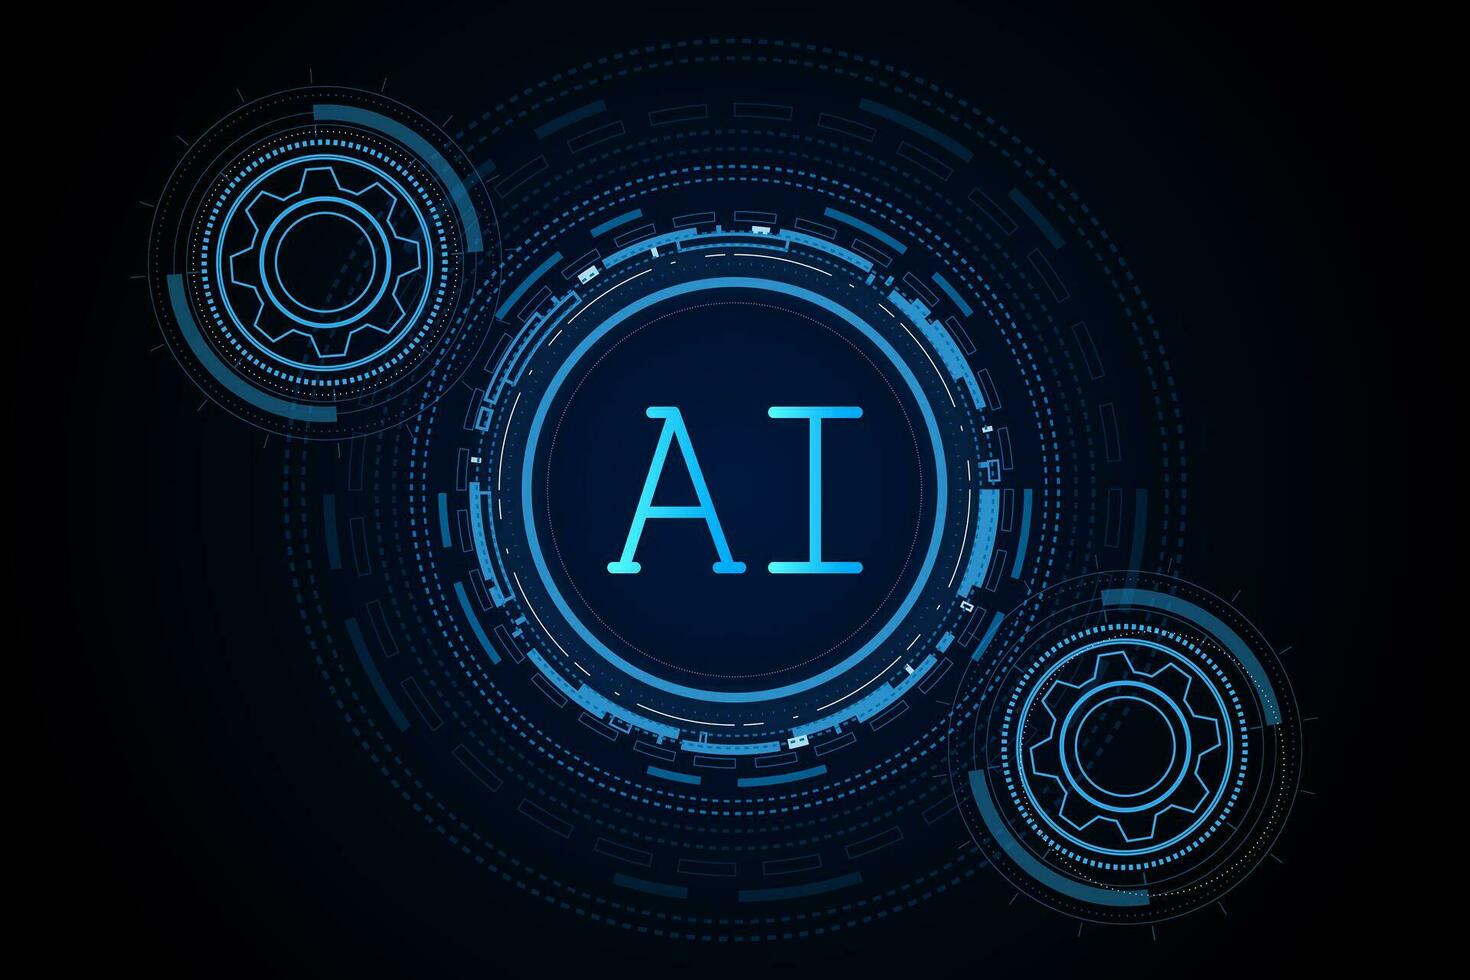 Künstliche Intelligenz, AI-Chipsatz auf Platine, futuristisches Technologiekonzept vektor